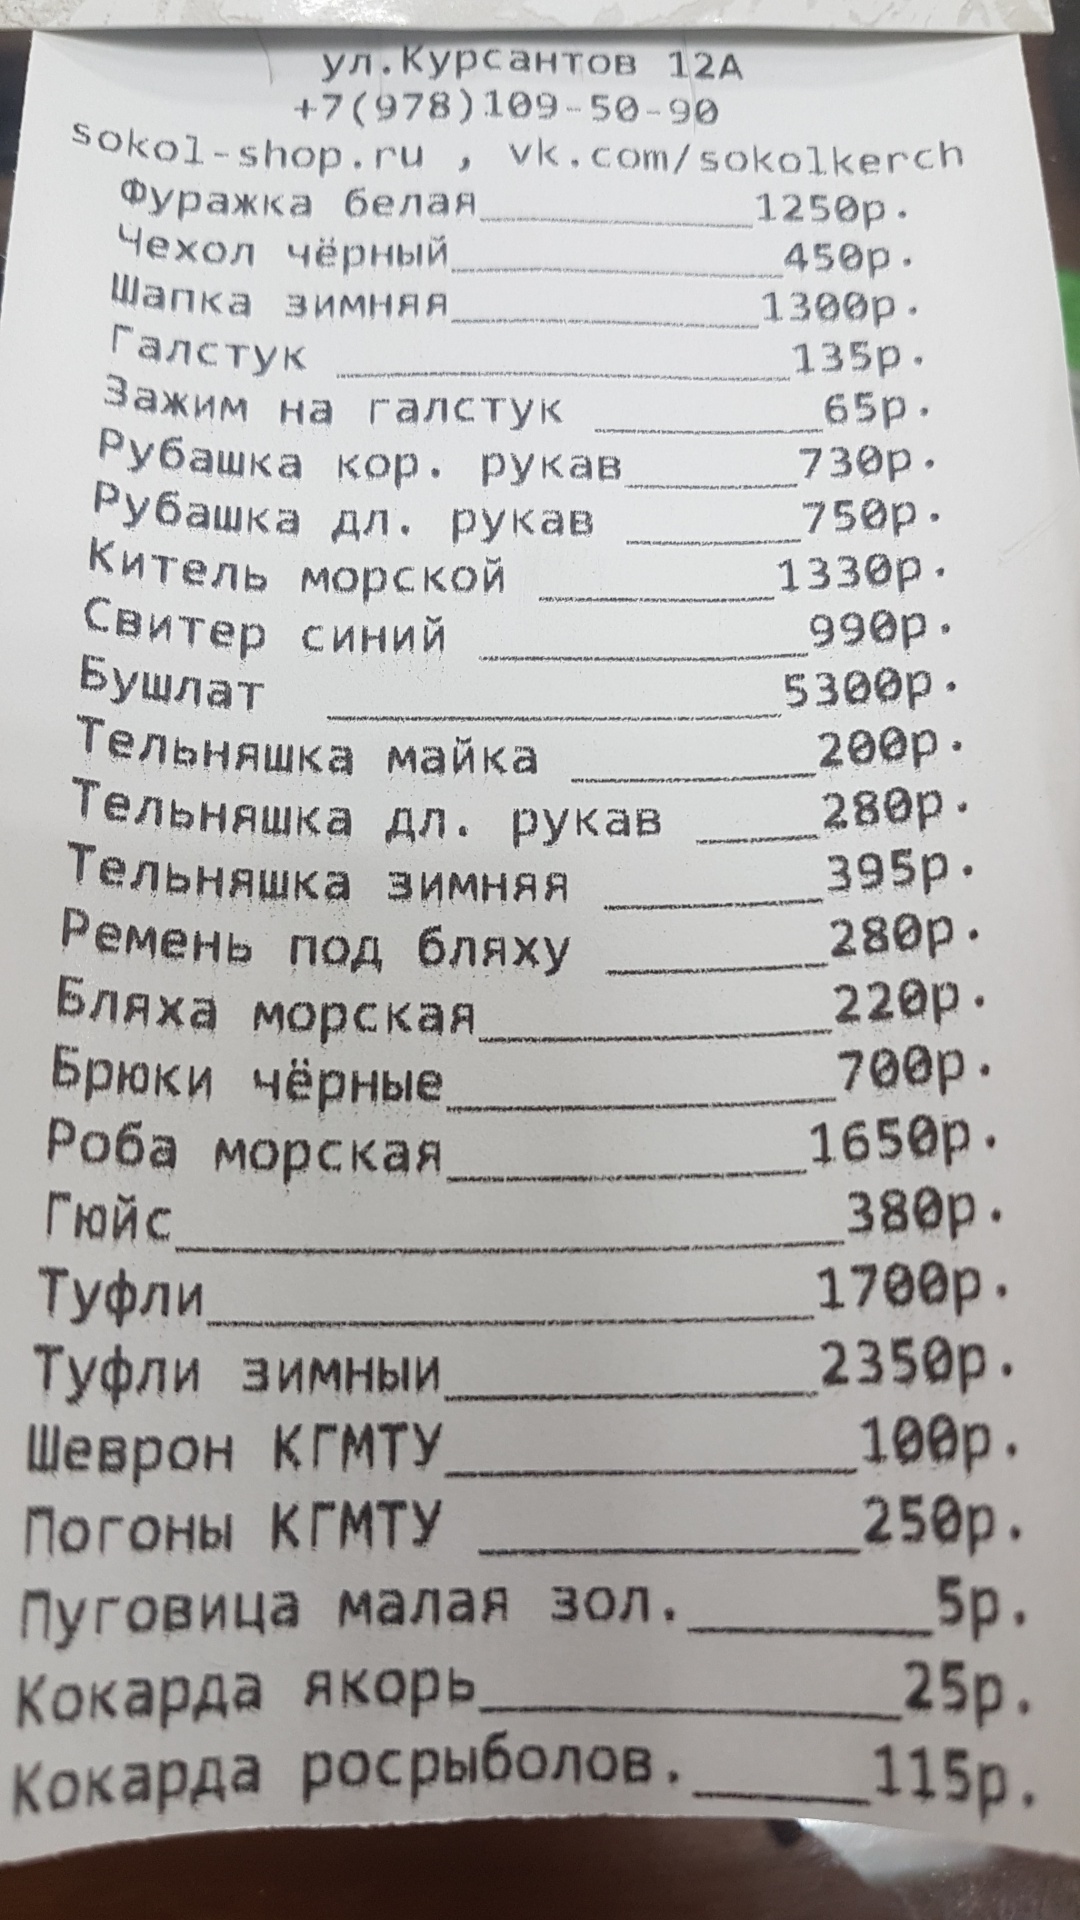 Магазин Сокол Керчь Каталог Товаров Цены